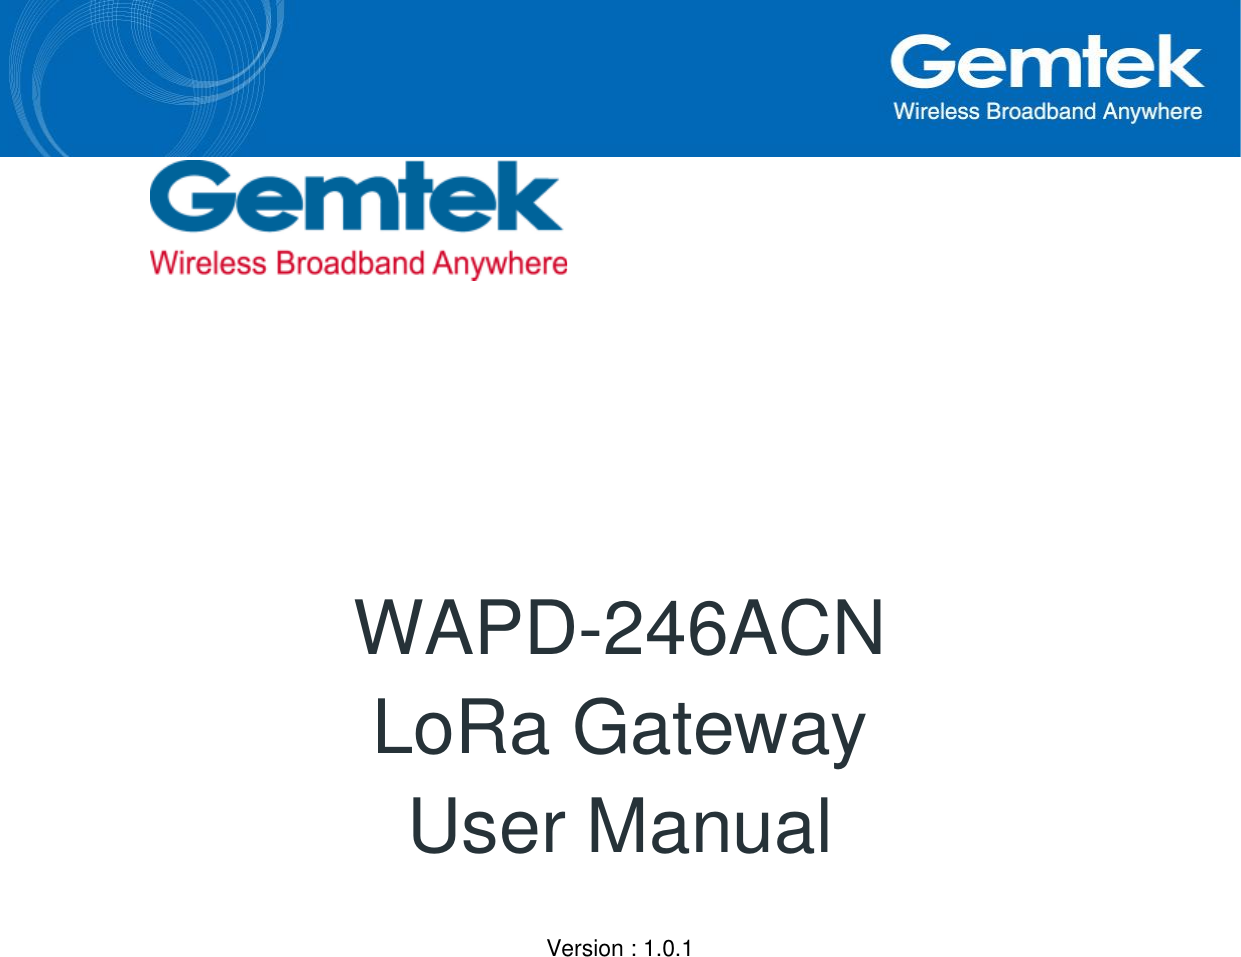       WAPD-246ACN  LoRa Gateway  User Manual  Version : 1.0.1    